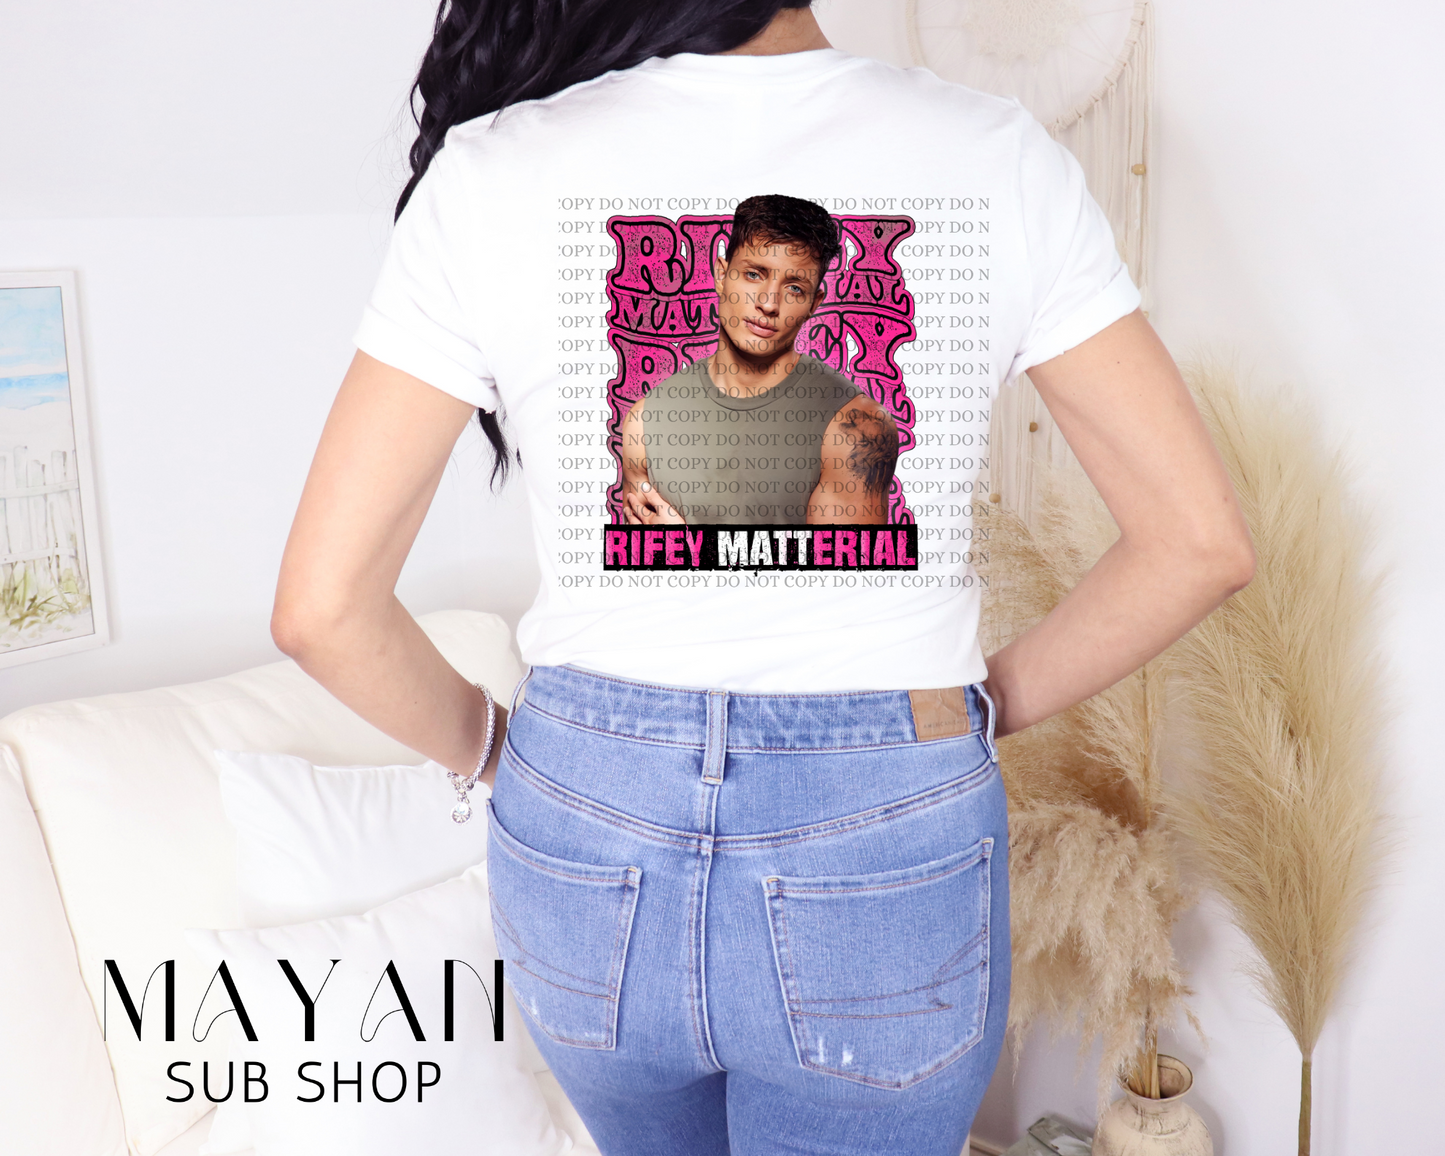 Rifey matterial white shirt back side. - Mayan Sub Shop